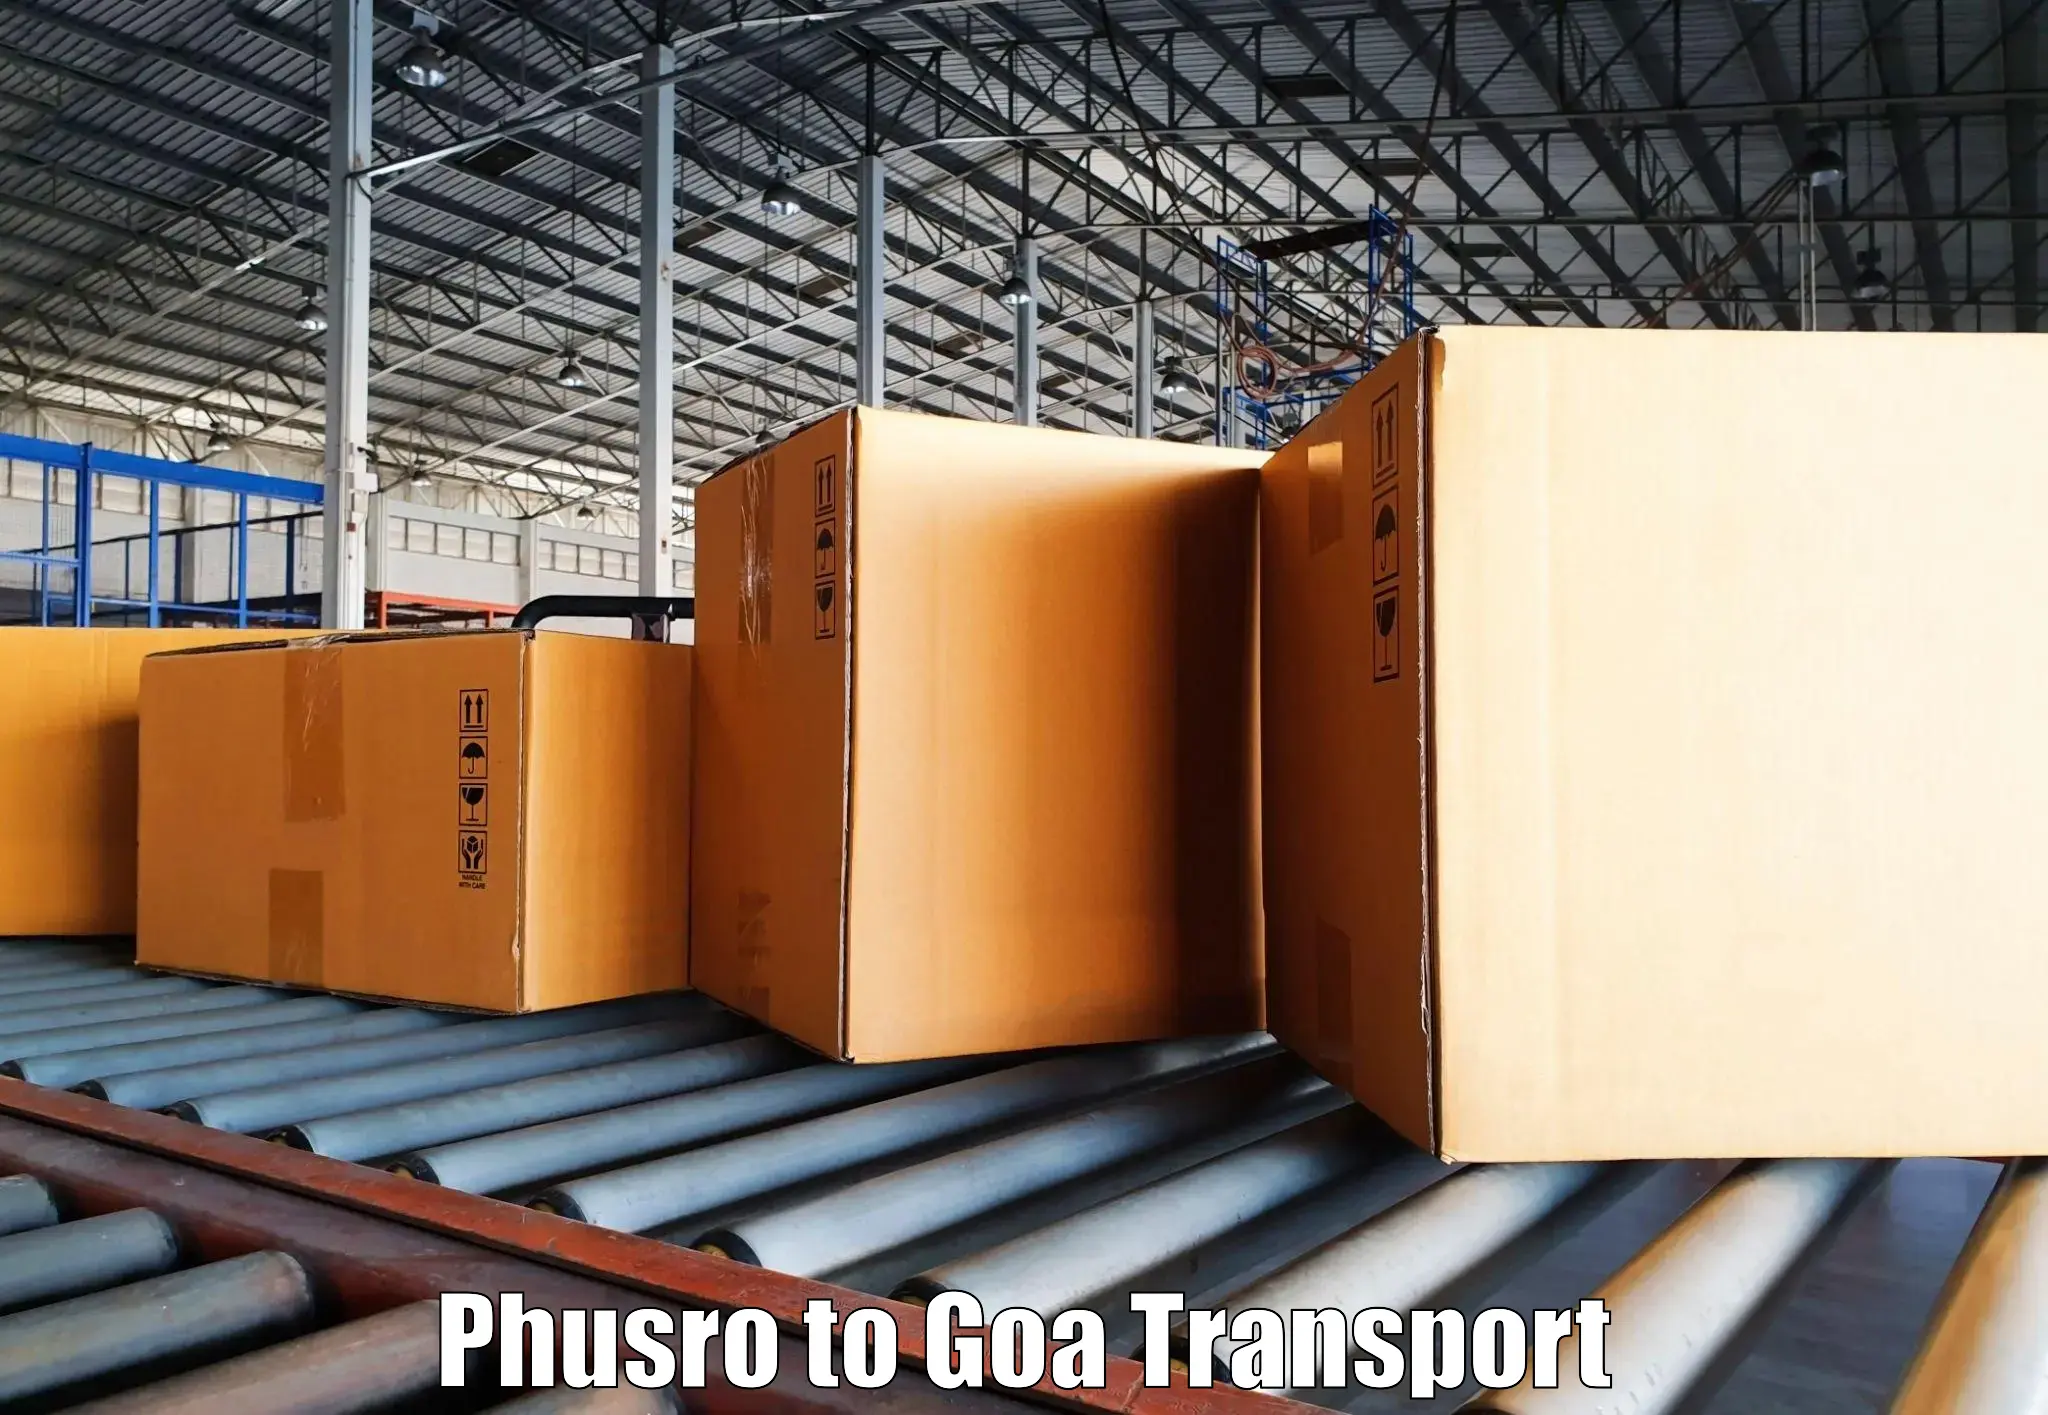 Nearest transport service Phusro to Vasco da Gama